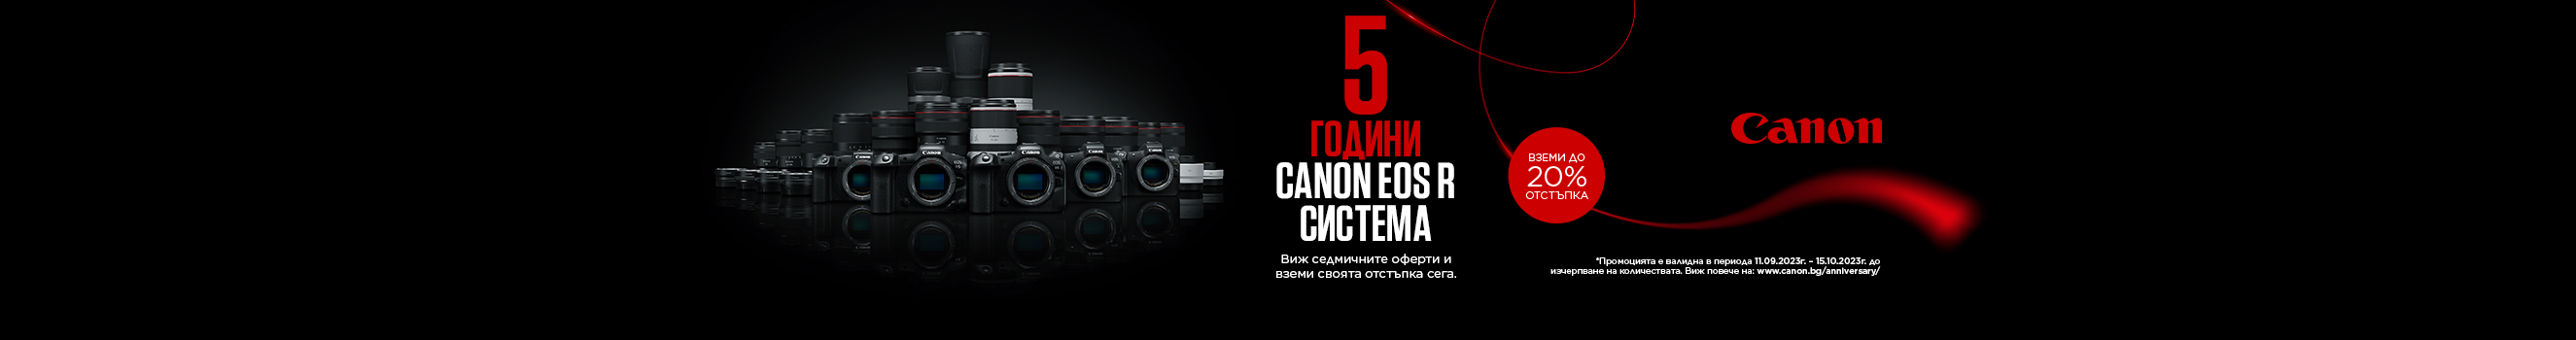  Възползвайте се от седмичните оферти с 20% отстъпка за фотоапарат Canon EOS R и до 20% отстъпка за RF обективи до 15.10. 